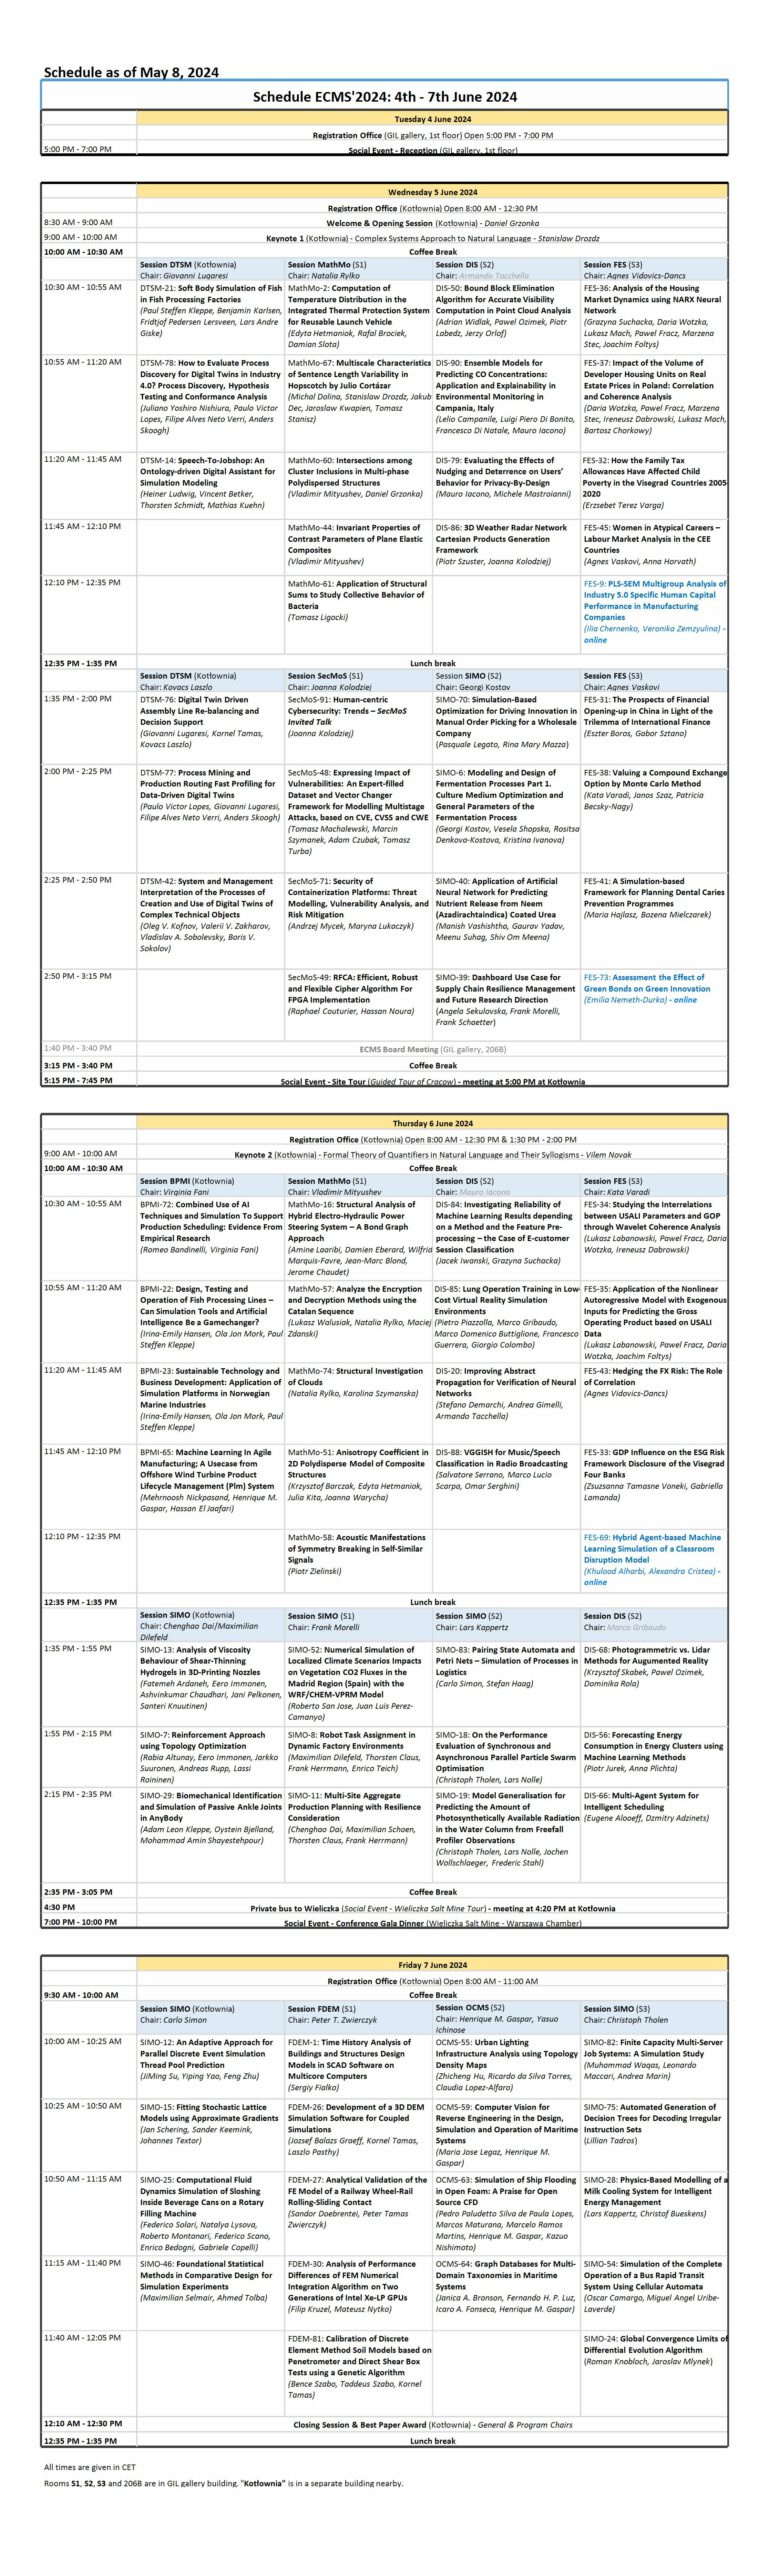 ECMS Schedule